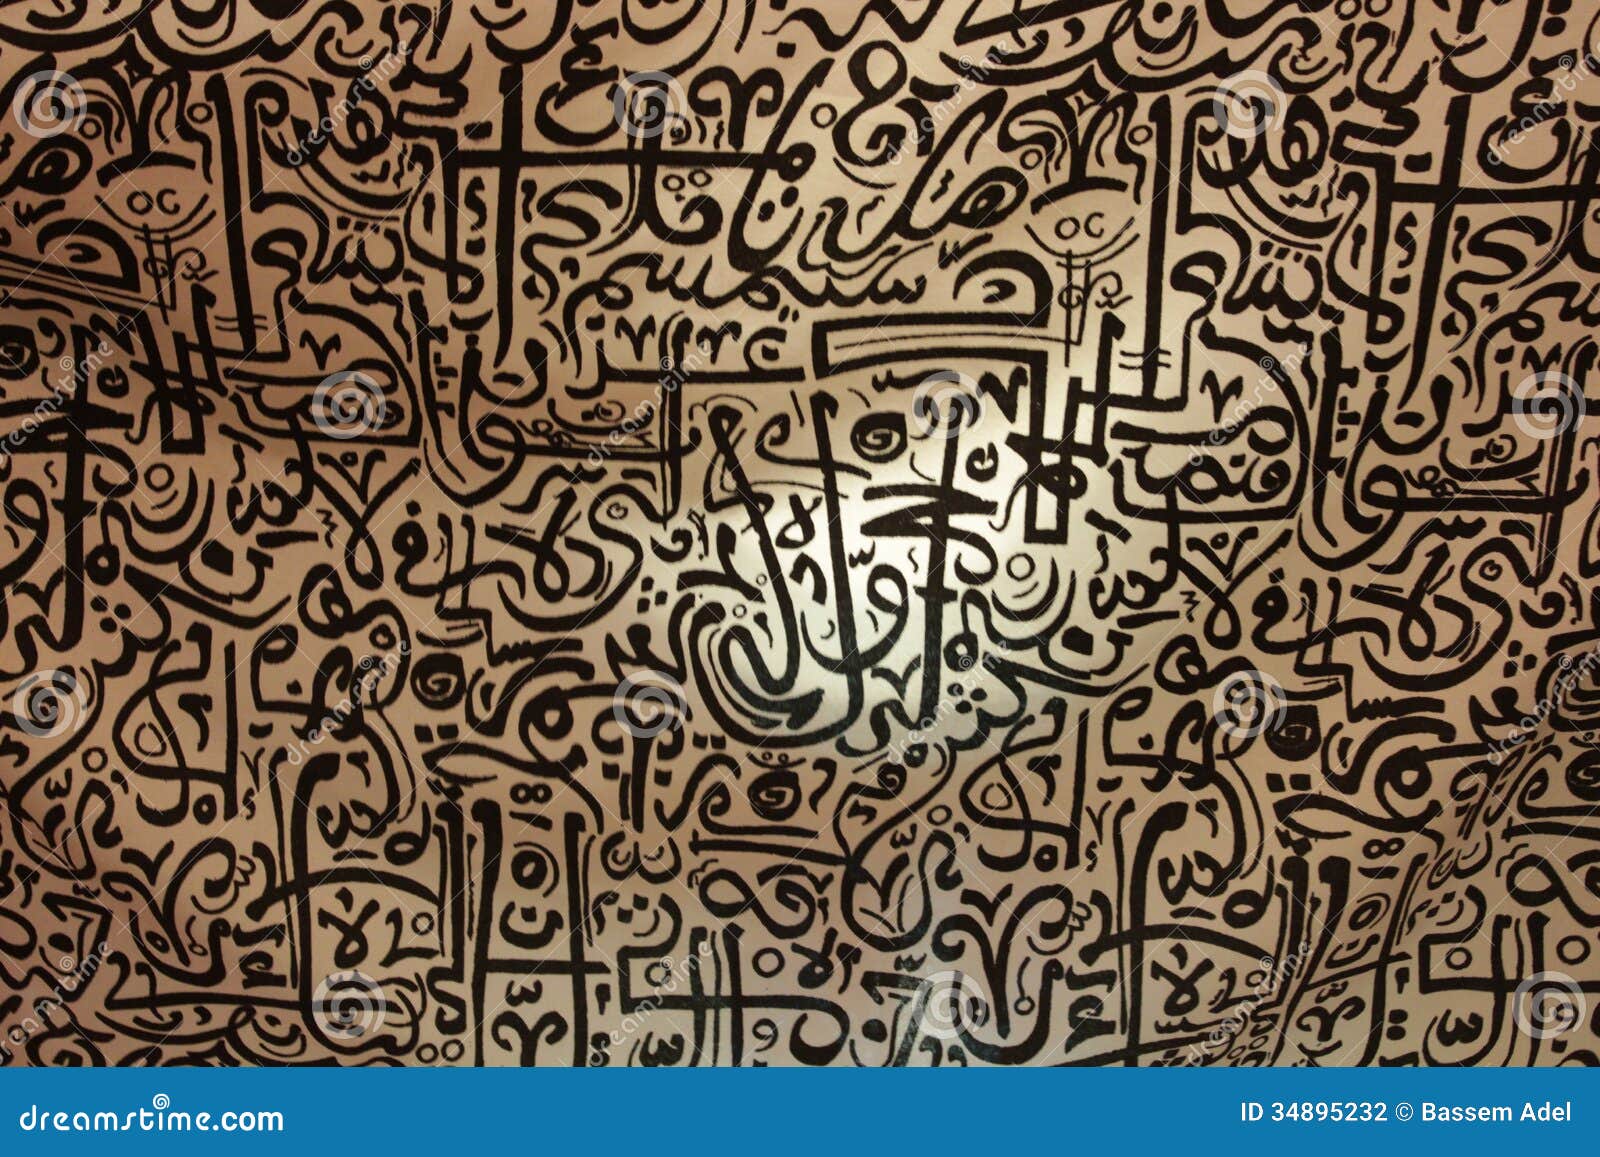 Arabic Letter Art